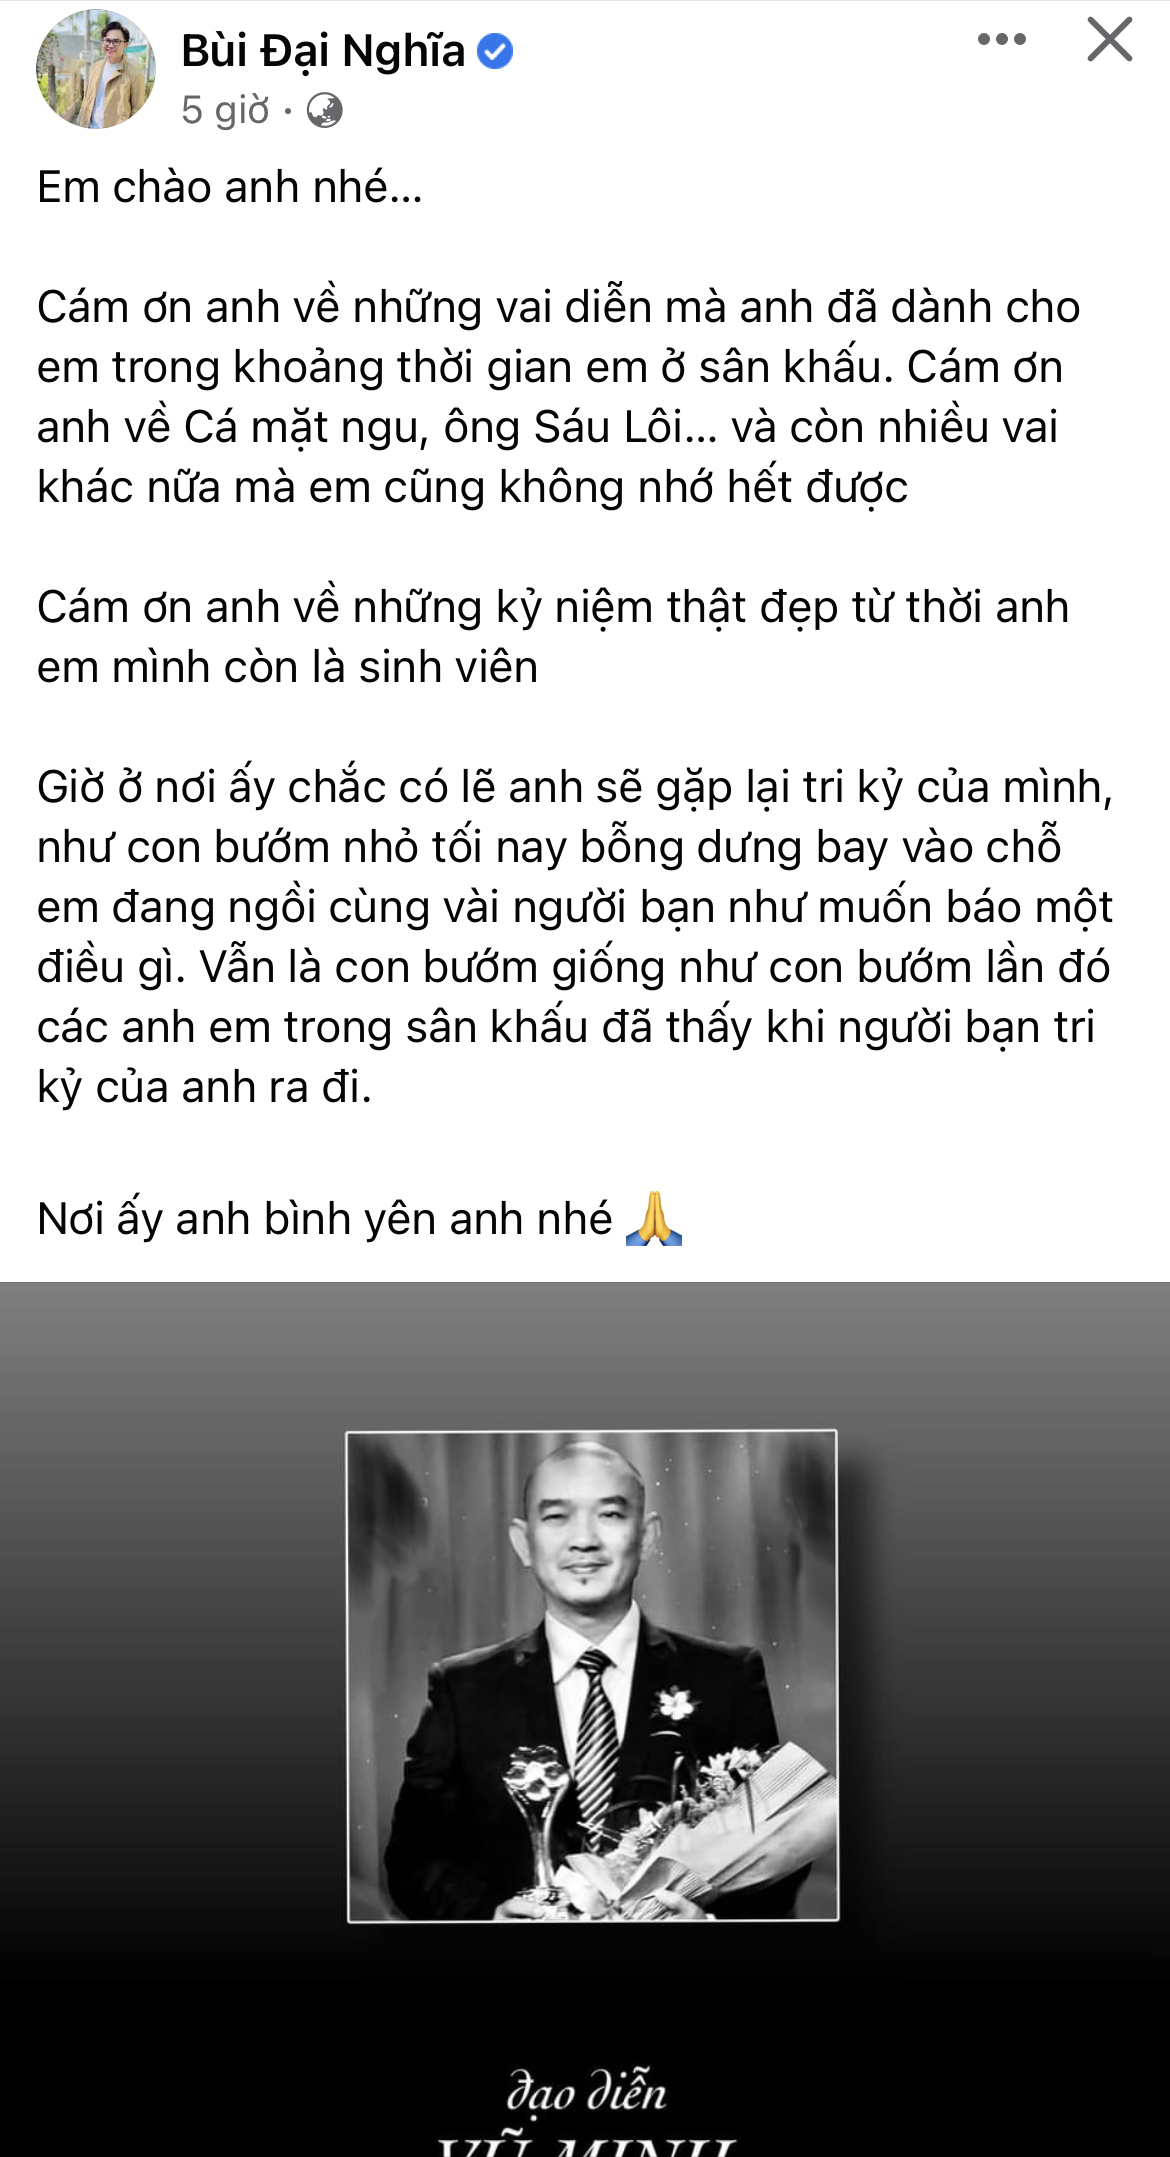 Quốc Trường, Thu Trang cùng dàn sao Việt bàng hoàng tiễn biệt đạo diễn Vũ Minh qua đời ở tuổi 56 - Ảnh 4.